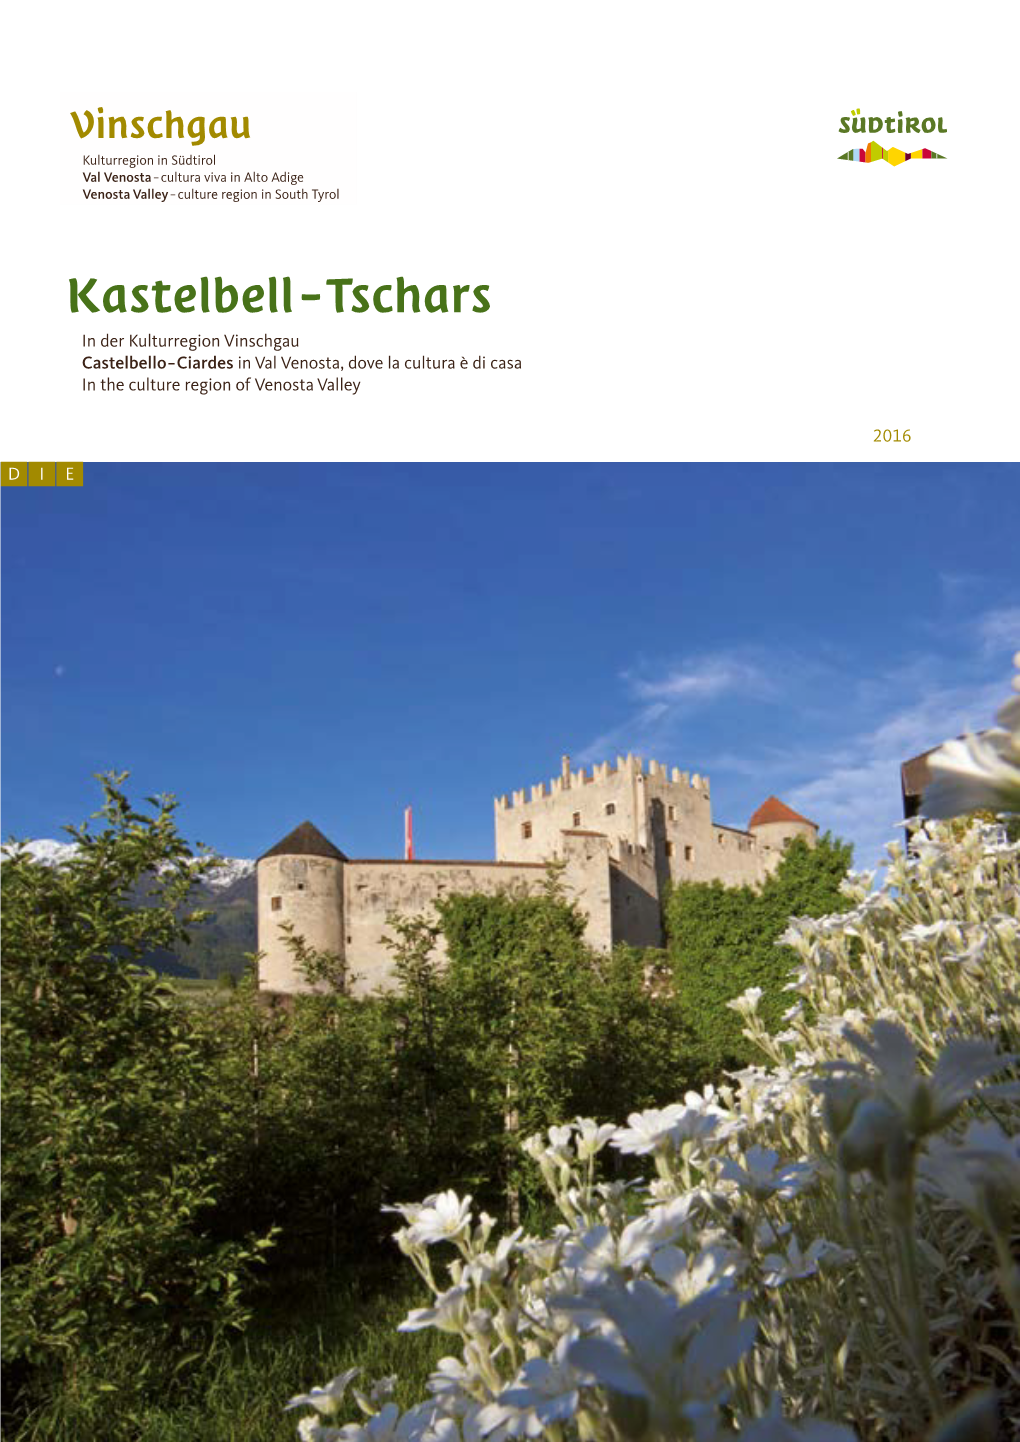 Kastelbell – Tschars in Der Kulturregion Vinschgau Castelbello – Ciardes in Val Venosta, Dove La Cultura È Di Casa in the Culture Region of Venosta Valley